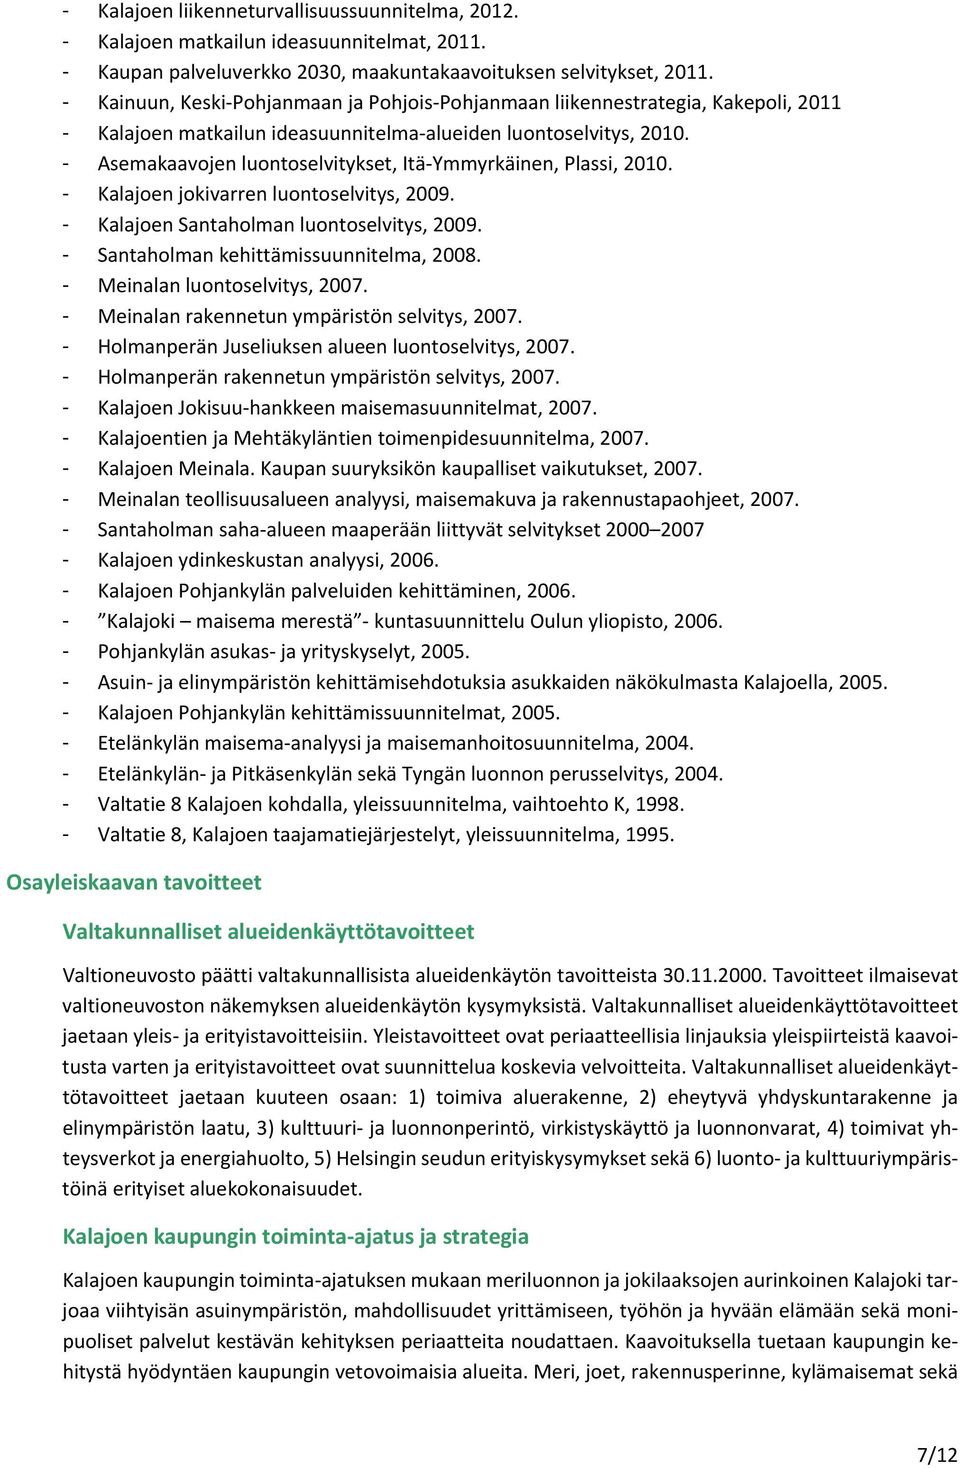 - Asemakaavojen luontoselvitykset, Itä Ymmyrkäinen, Plassi, 2010. - Kalajoen jokivarren luontoselvitys, 2009. - Kalajoen Santaholman luontoselvitys, 2009. - Santaholman kehittämissuunnitelma, 2008.